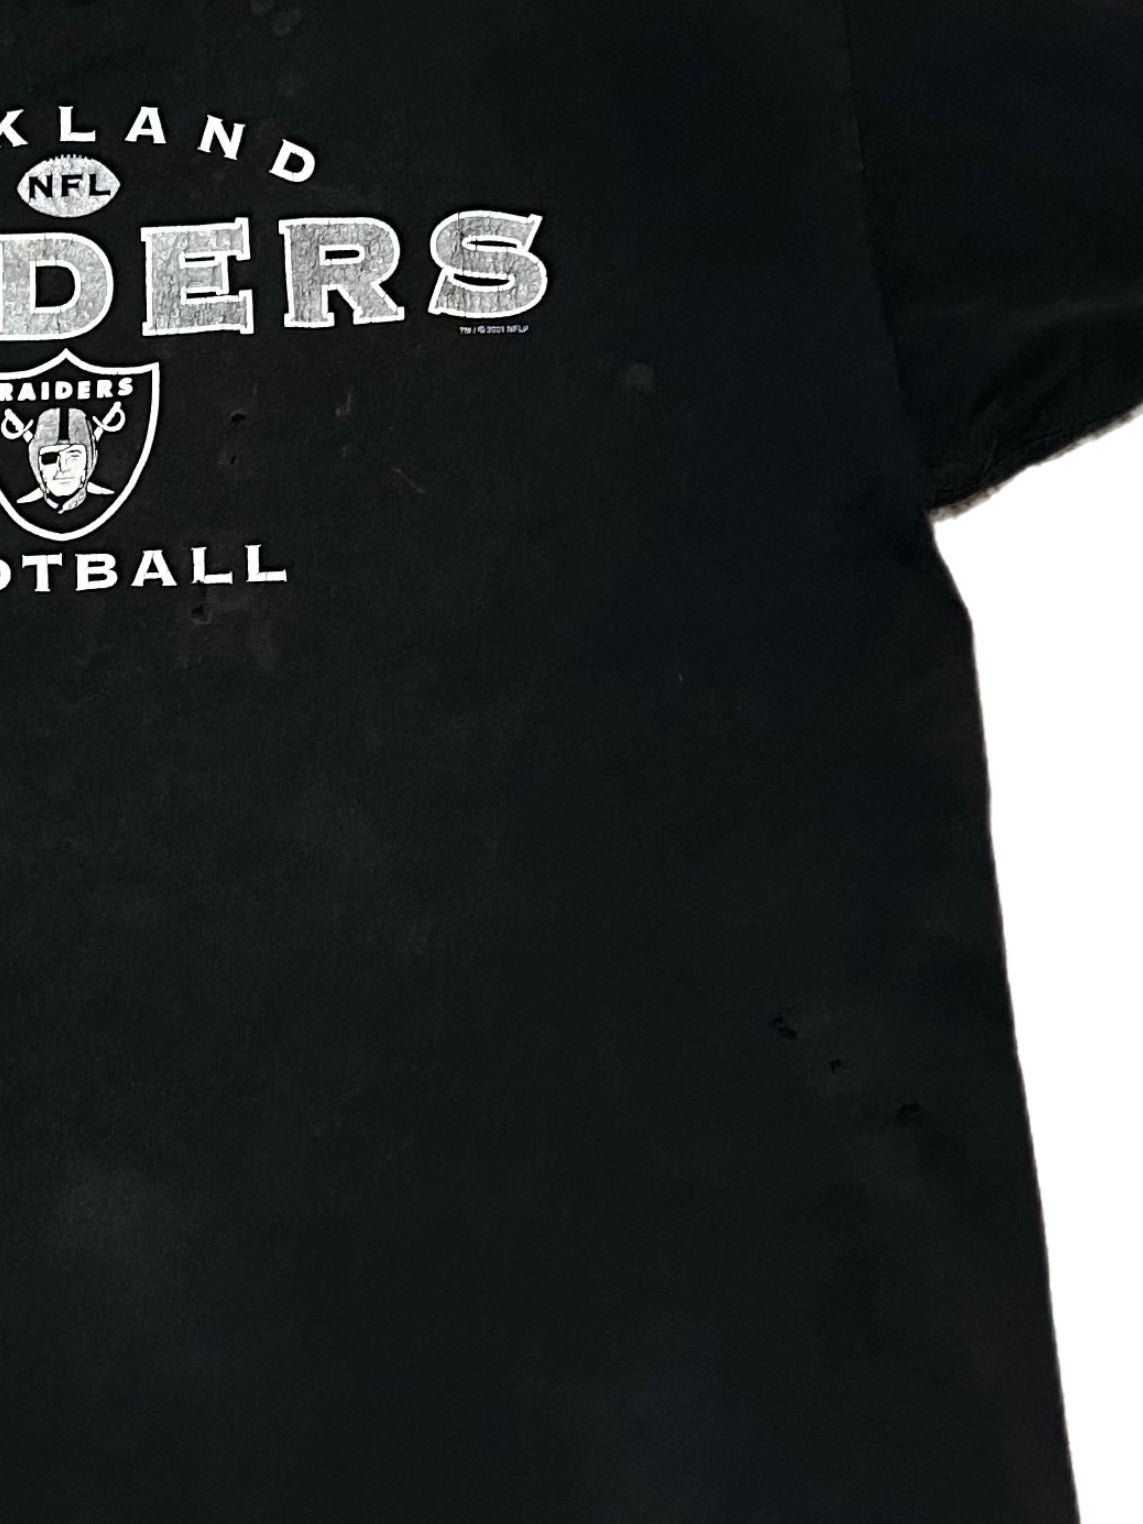 Vintage Oakland Raiders T-Shirt – Deelish